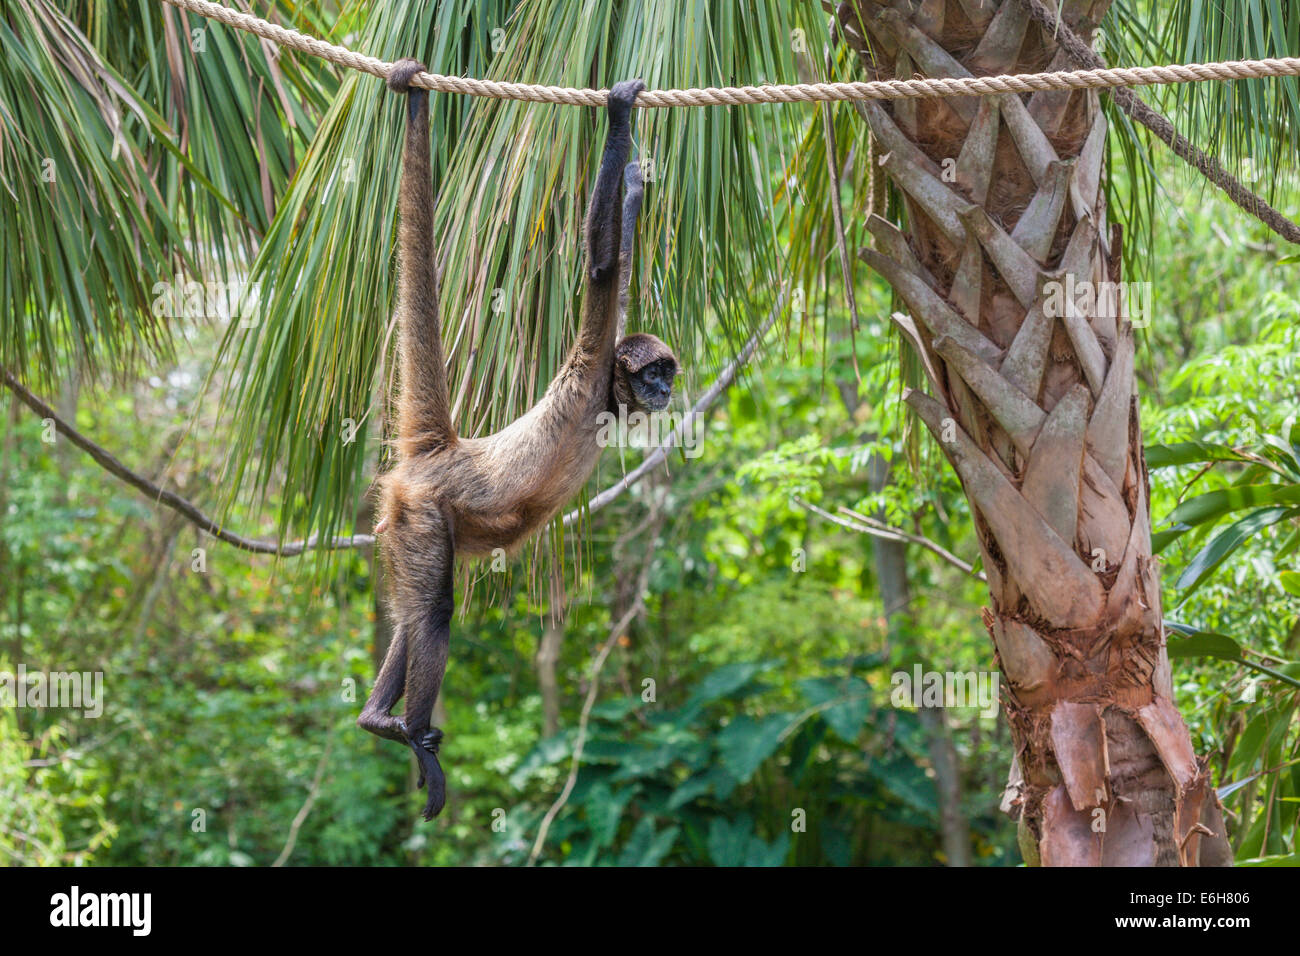 Geoffroy'sÃ¢â€šÂ¬Ã¢â€žÂ¢singe araignée (Ateles geoffroyi), également appelé singe araignée à mains noires en captivité au zoo Audubon à la Nouvelle-Orléans Banque D'Images